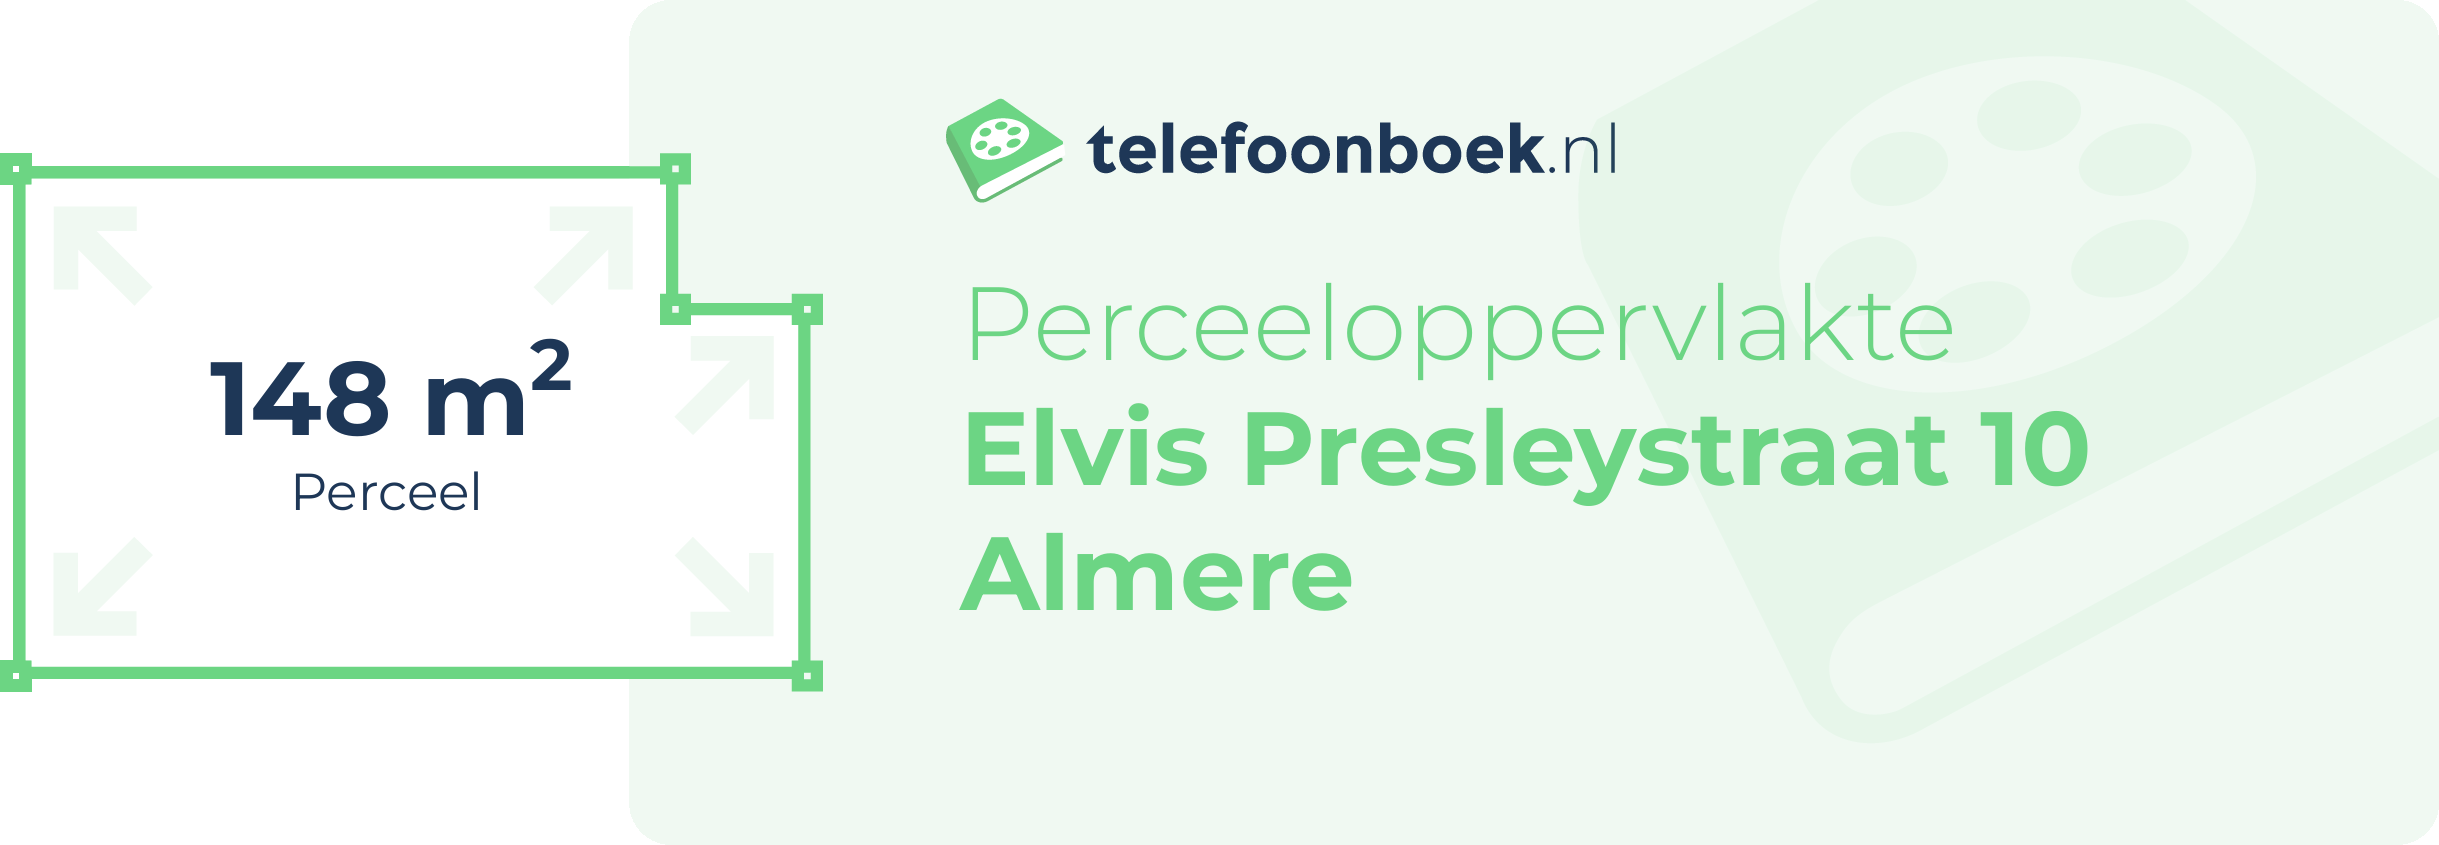 Perceeloppervlakte Elvis Presleystraat 10 Almere